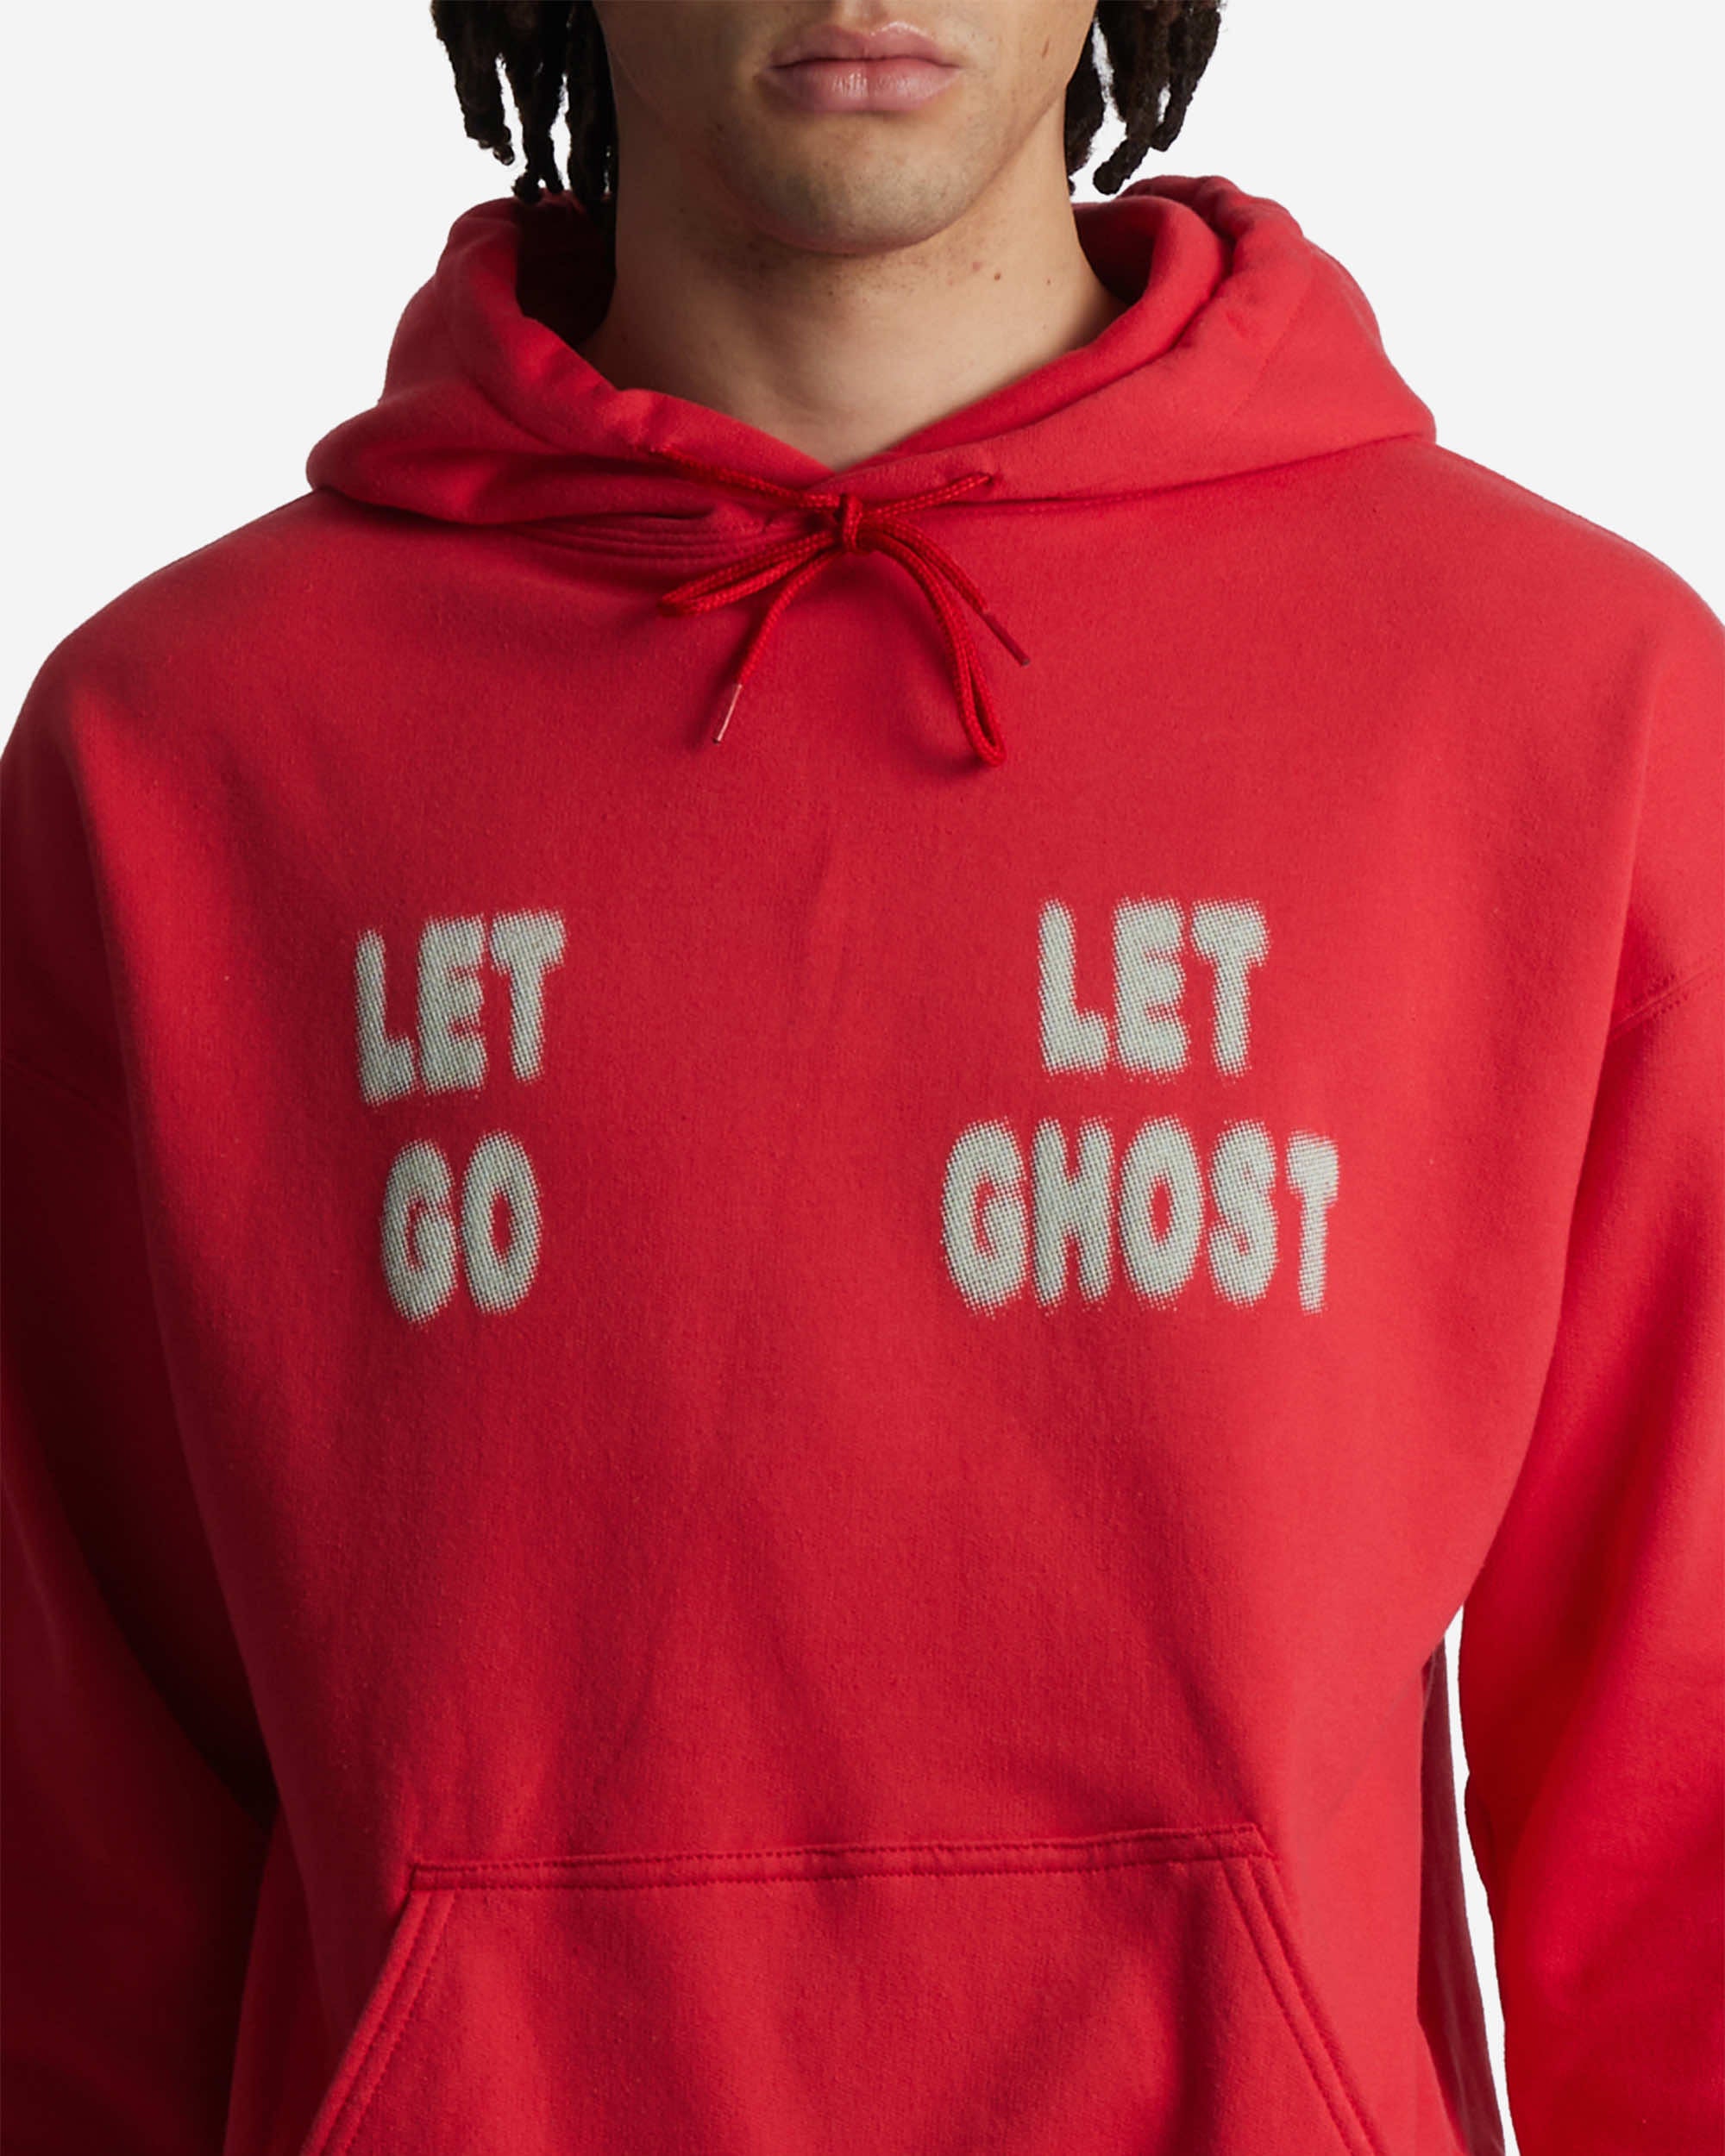 Let Go Let Ghost Hoodie